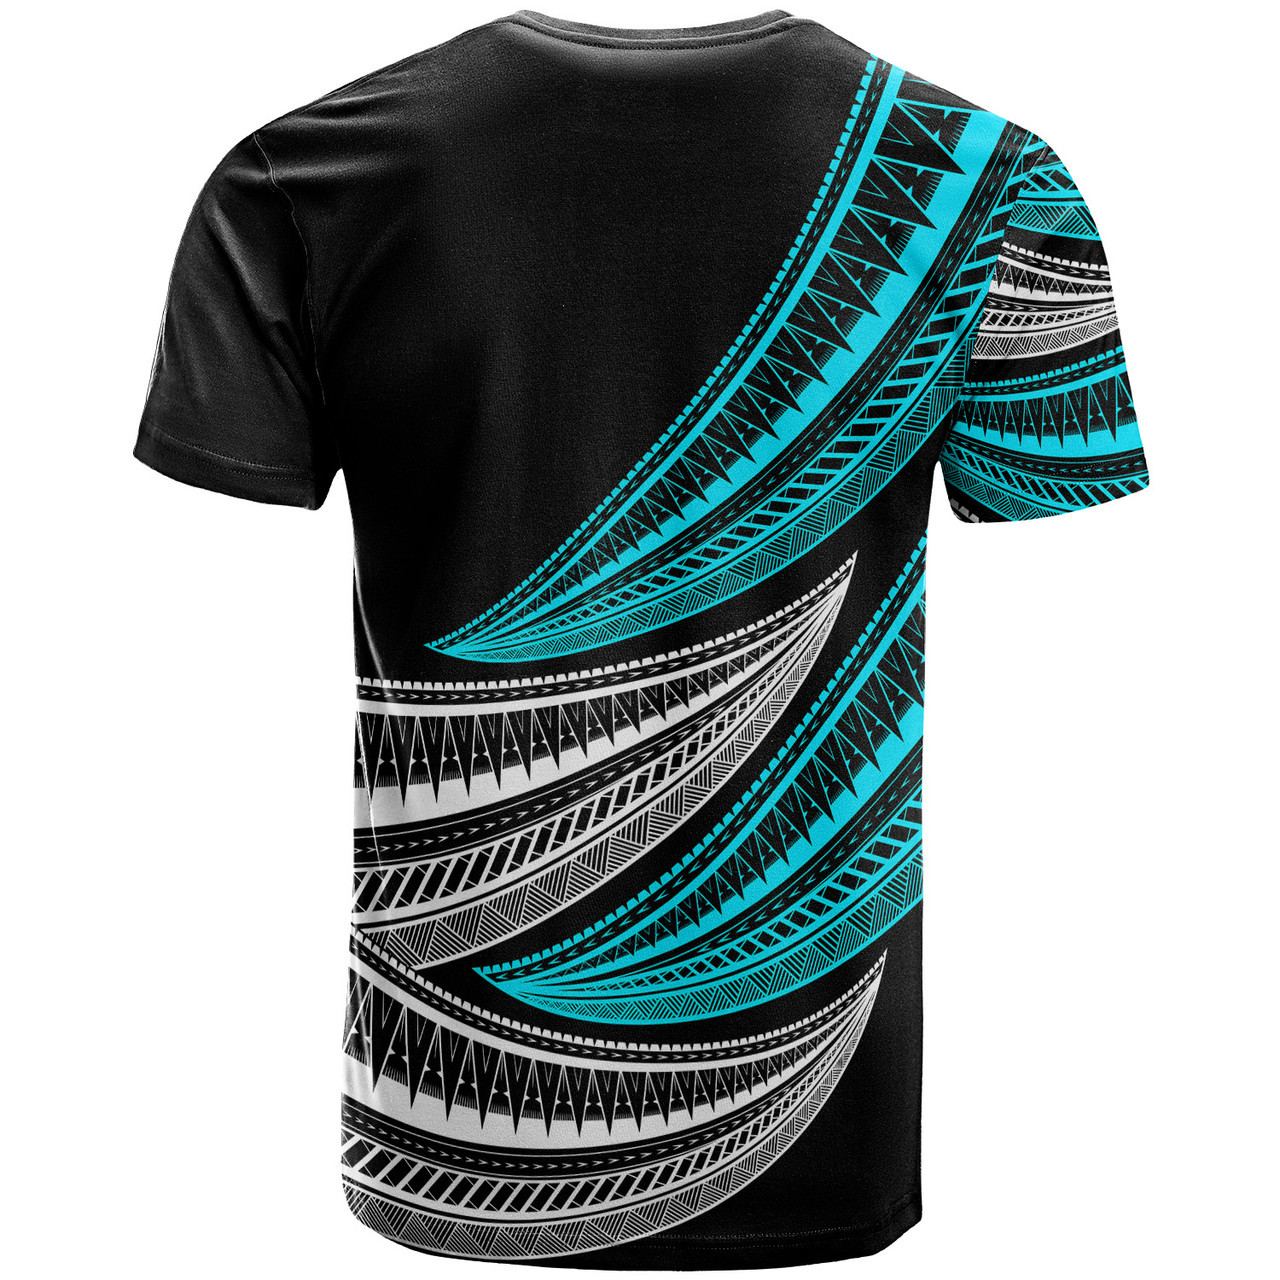 Samoa Custom Personalised T-Shirt - Wave Pattern Alternating TURQUOISE2